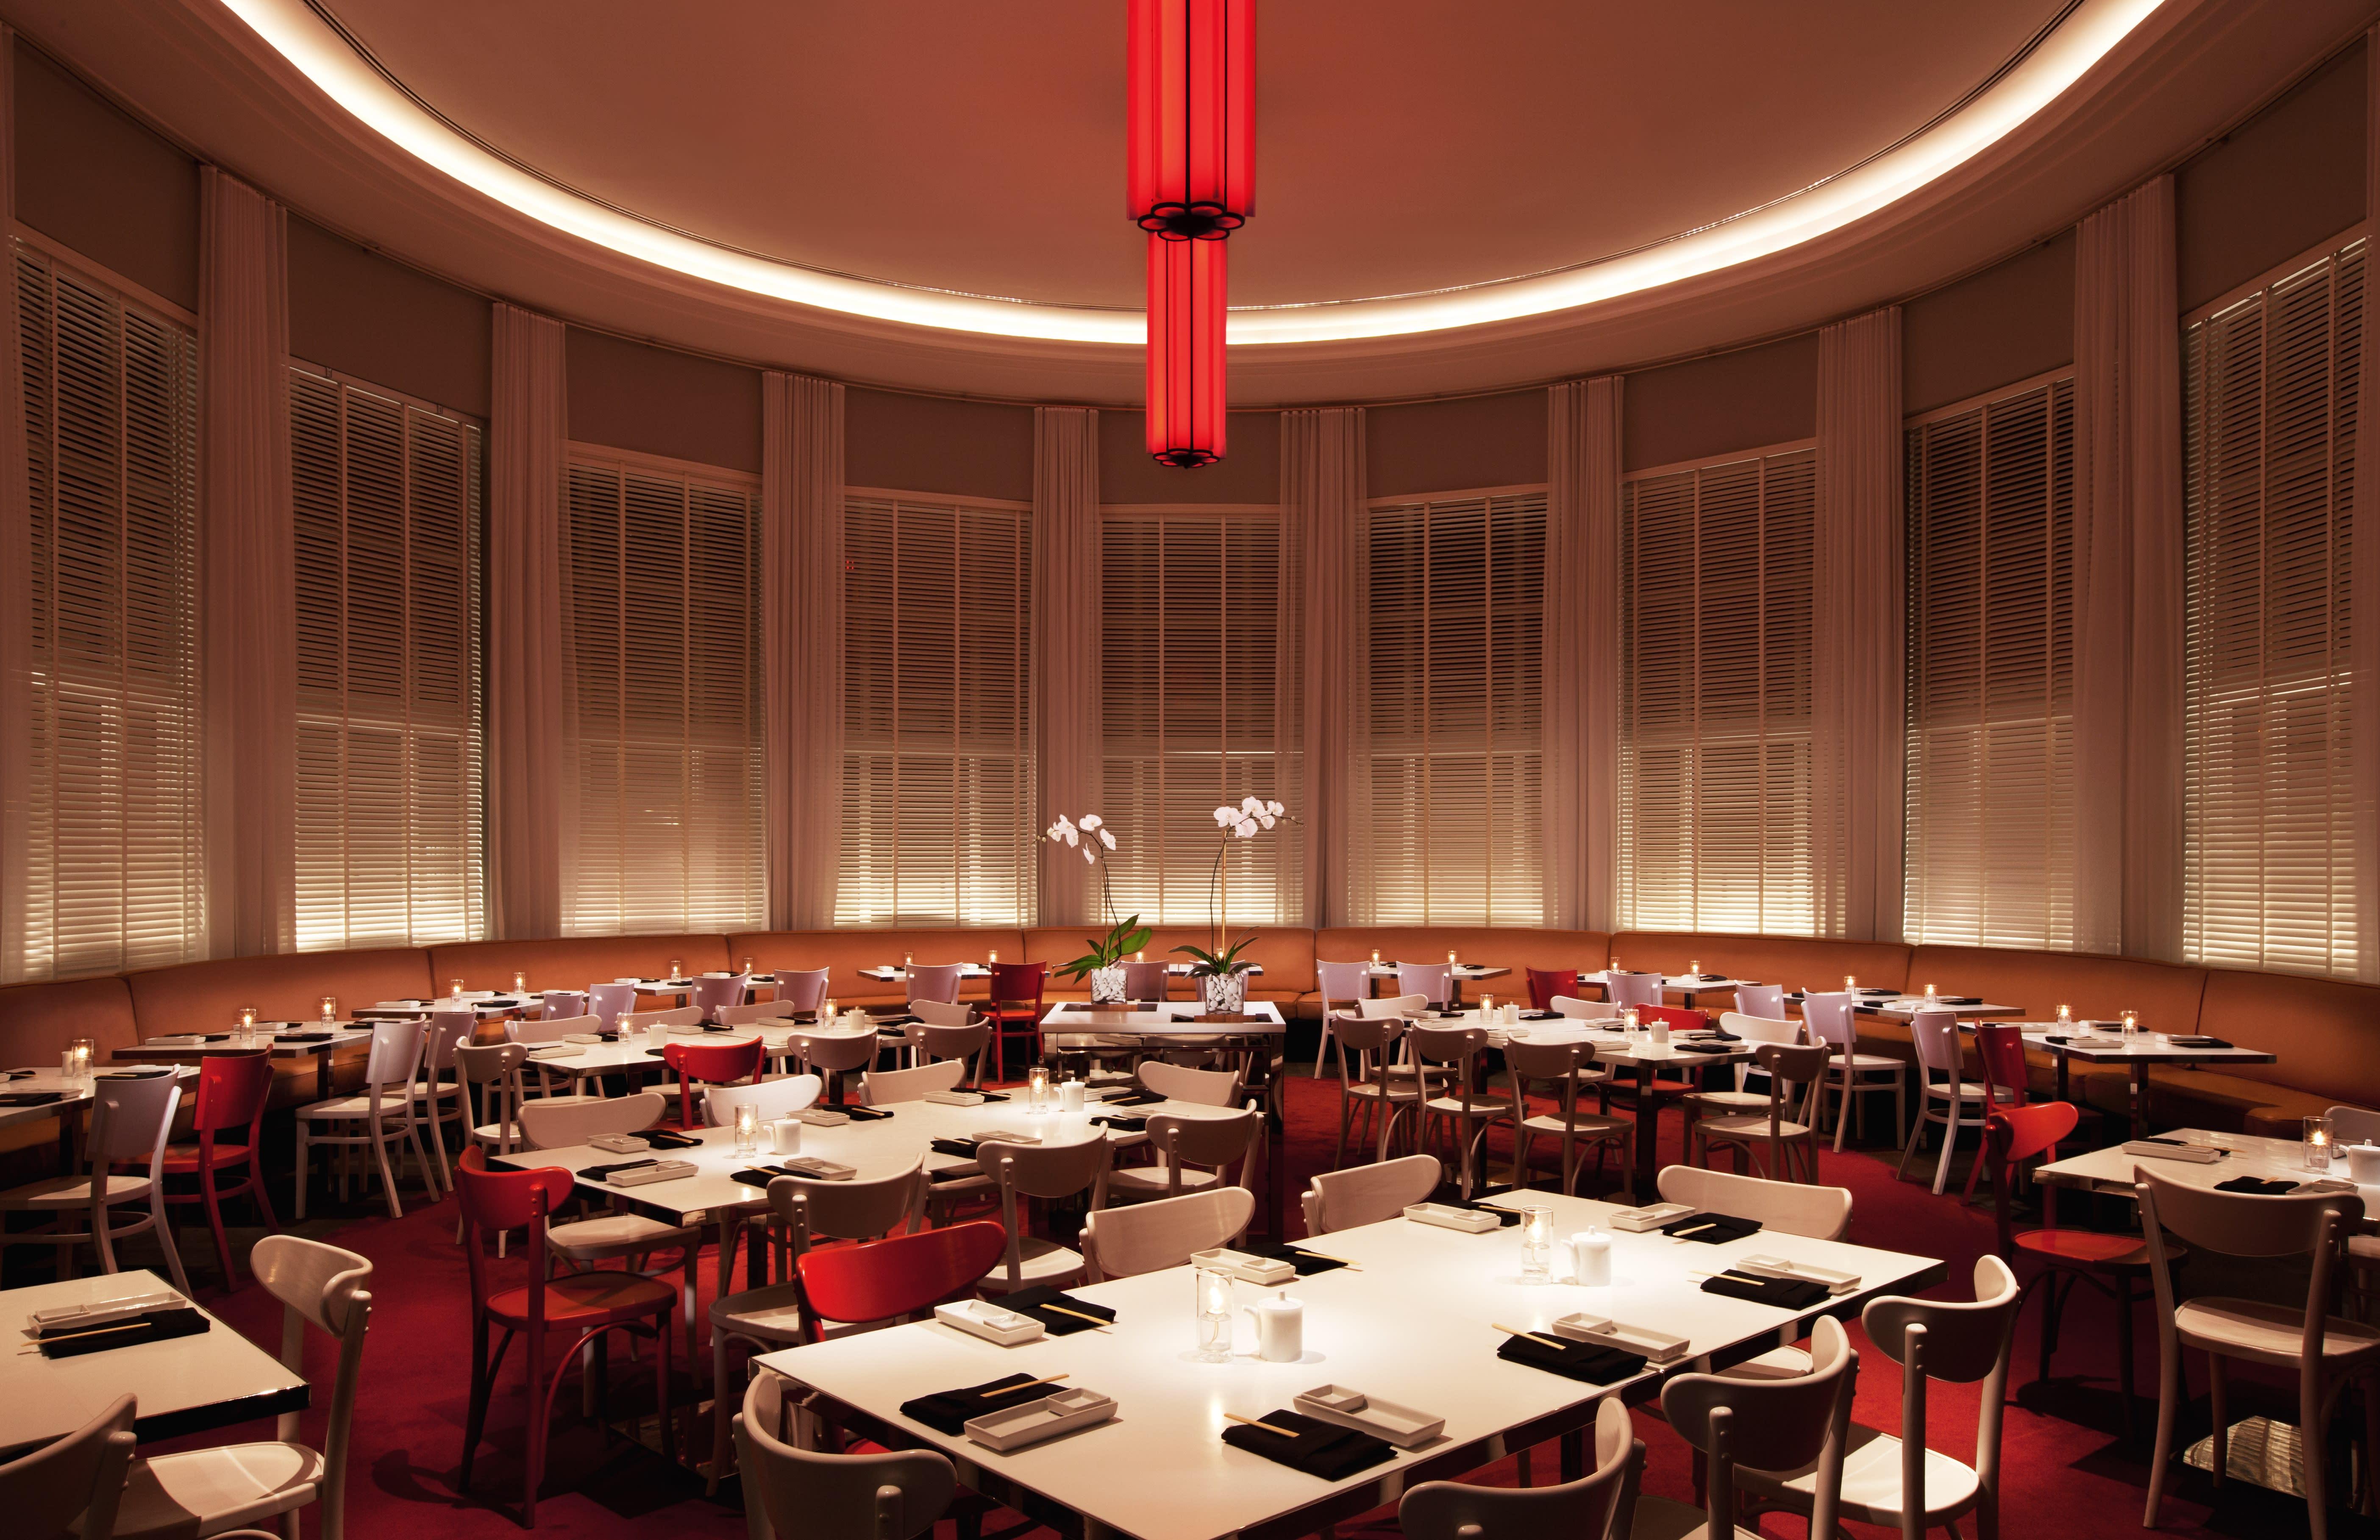 tables d'événement larges dans une salle circulaire avec tapis rouge et chandelier rouge 